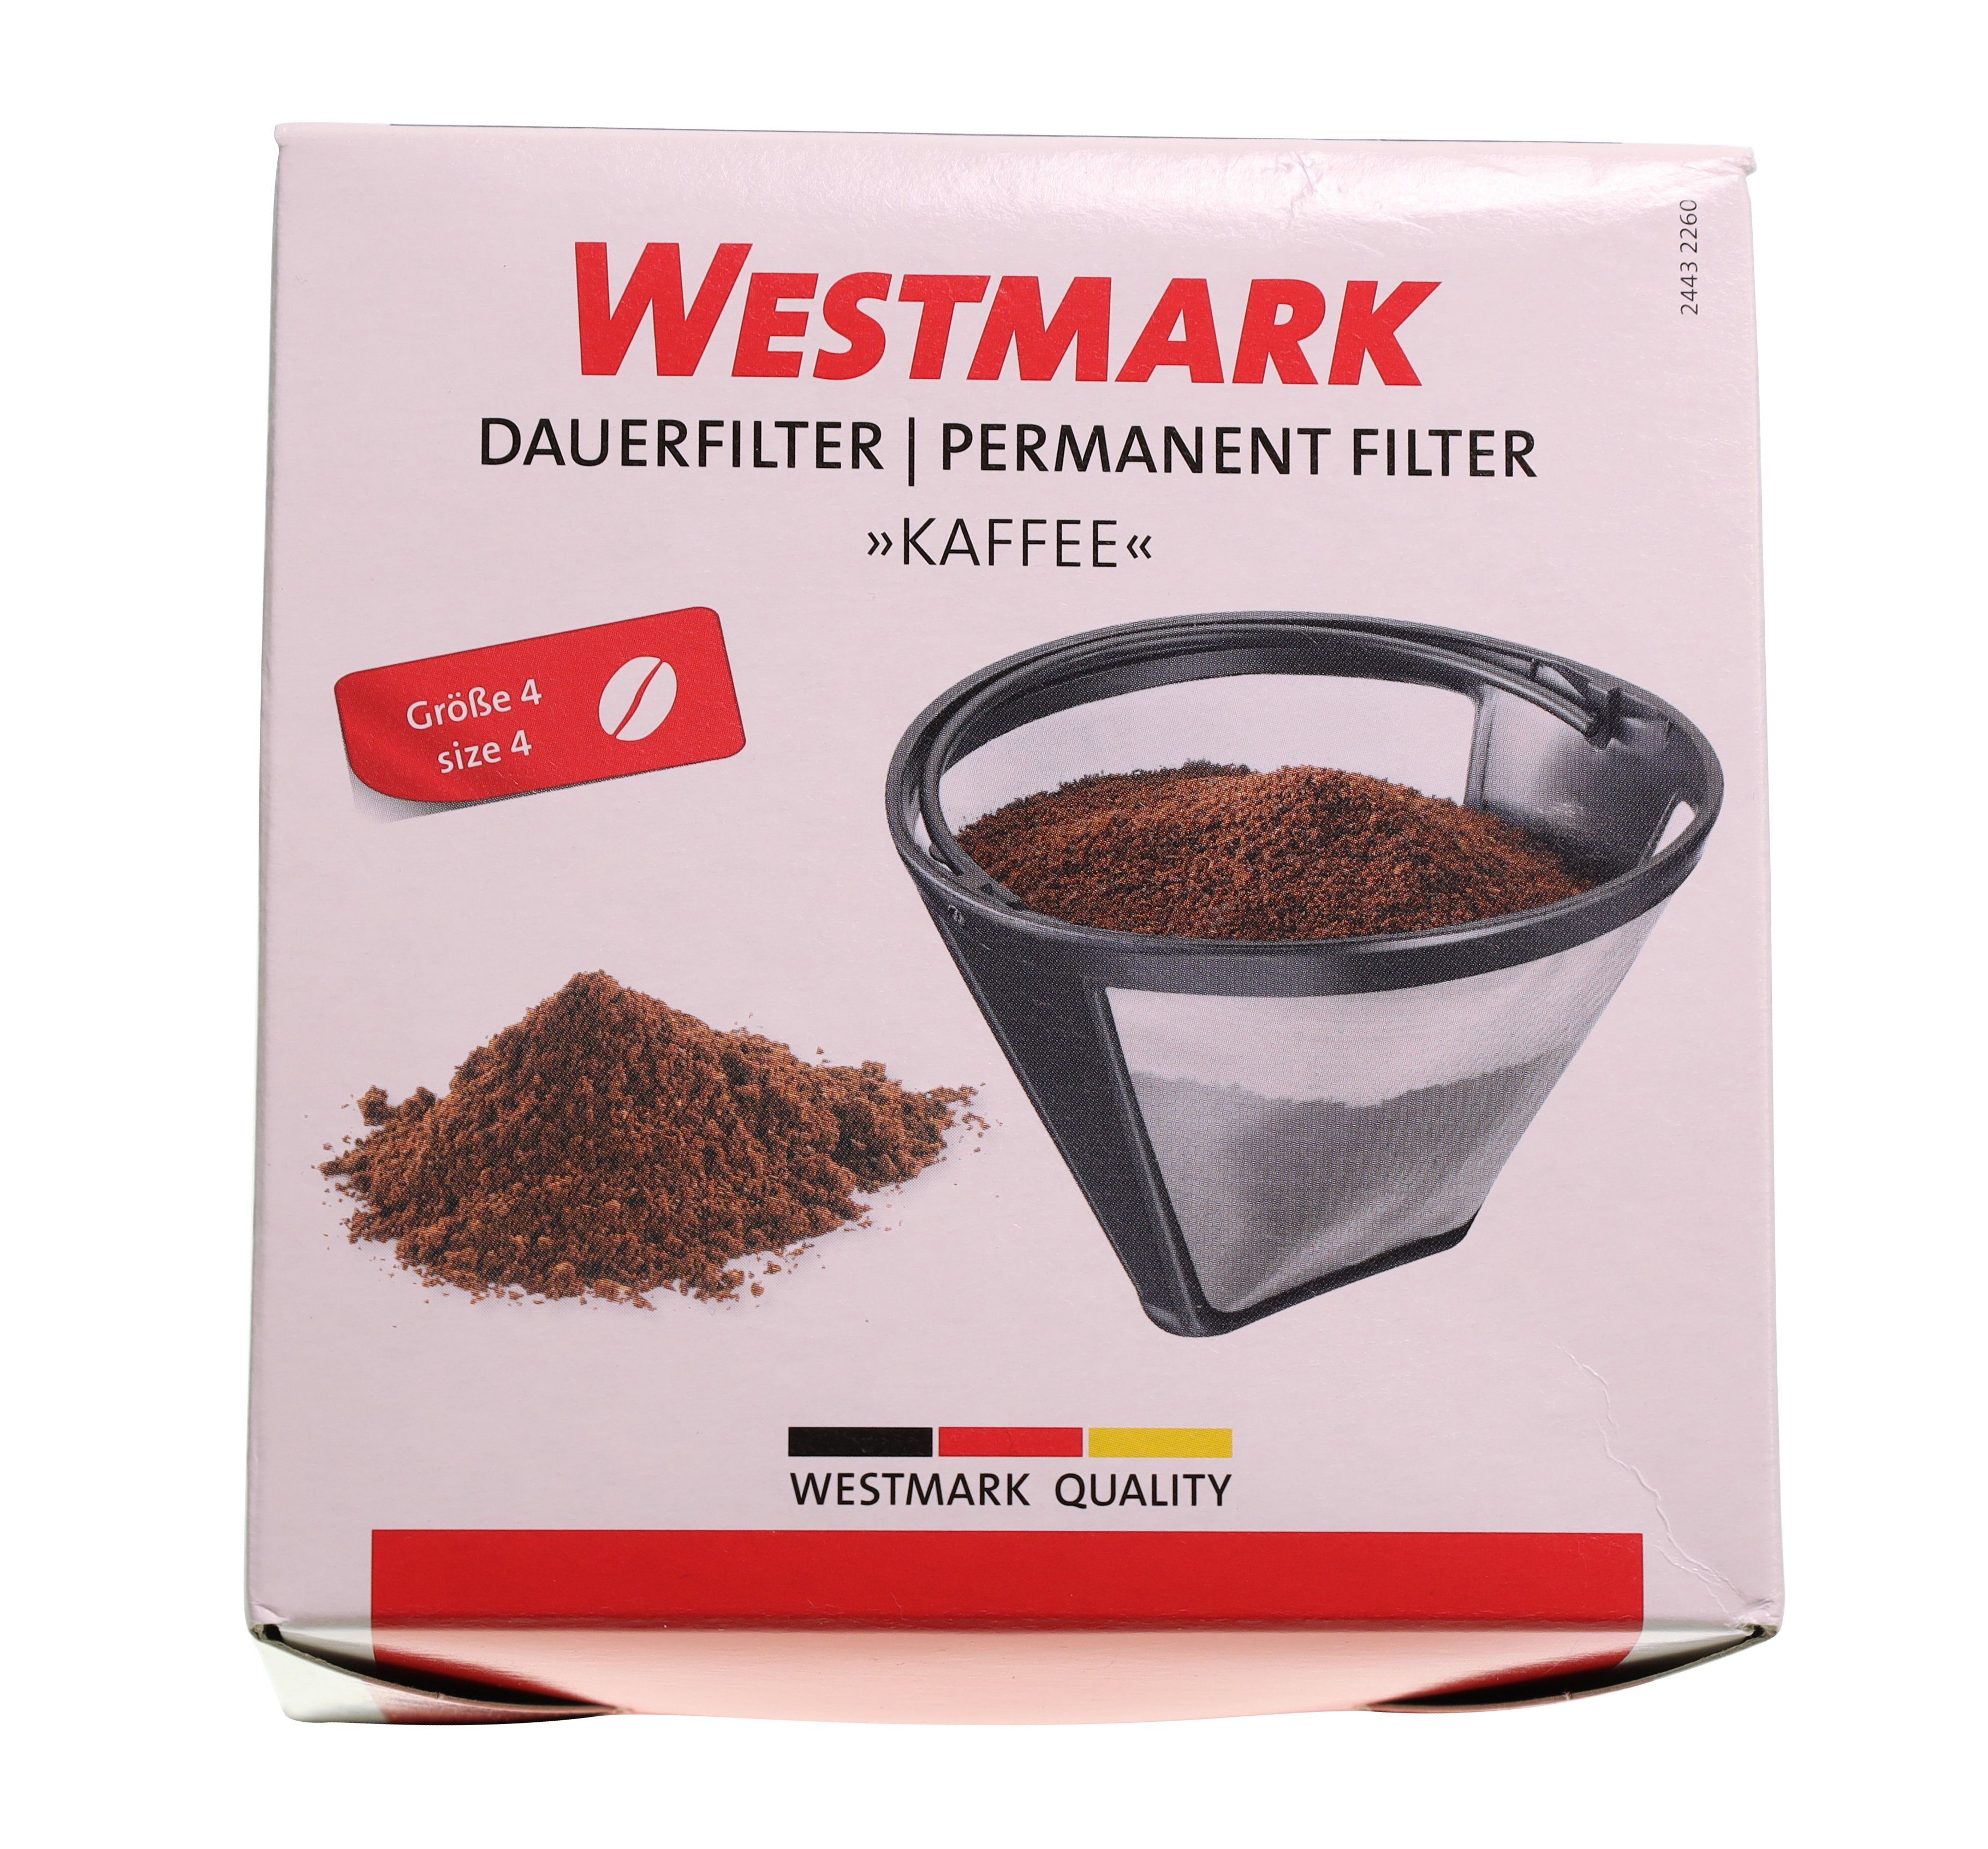 Dauerfilter WESTMARK Westmark größe 4 für Filterkaffeemaschine Filterka 24432260